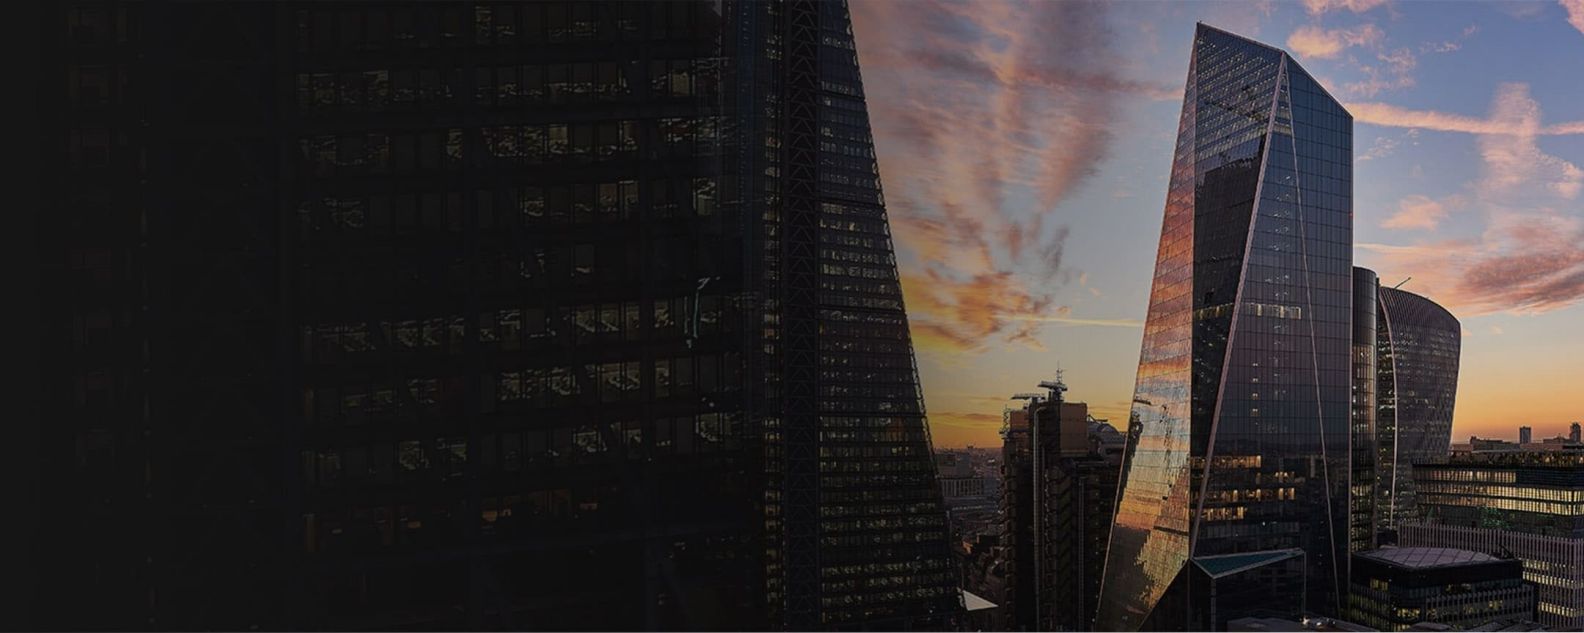 The Shardをはじめとするロンドンの高層ビルの夜景のローアングルからの眺め